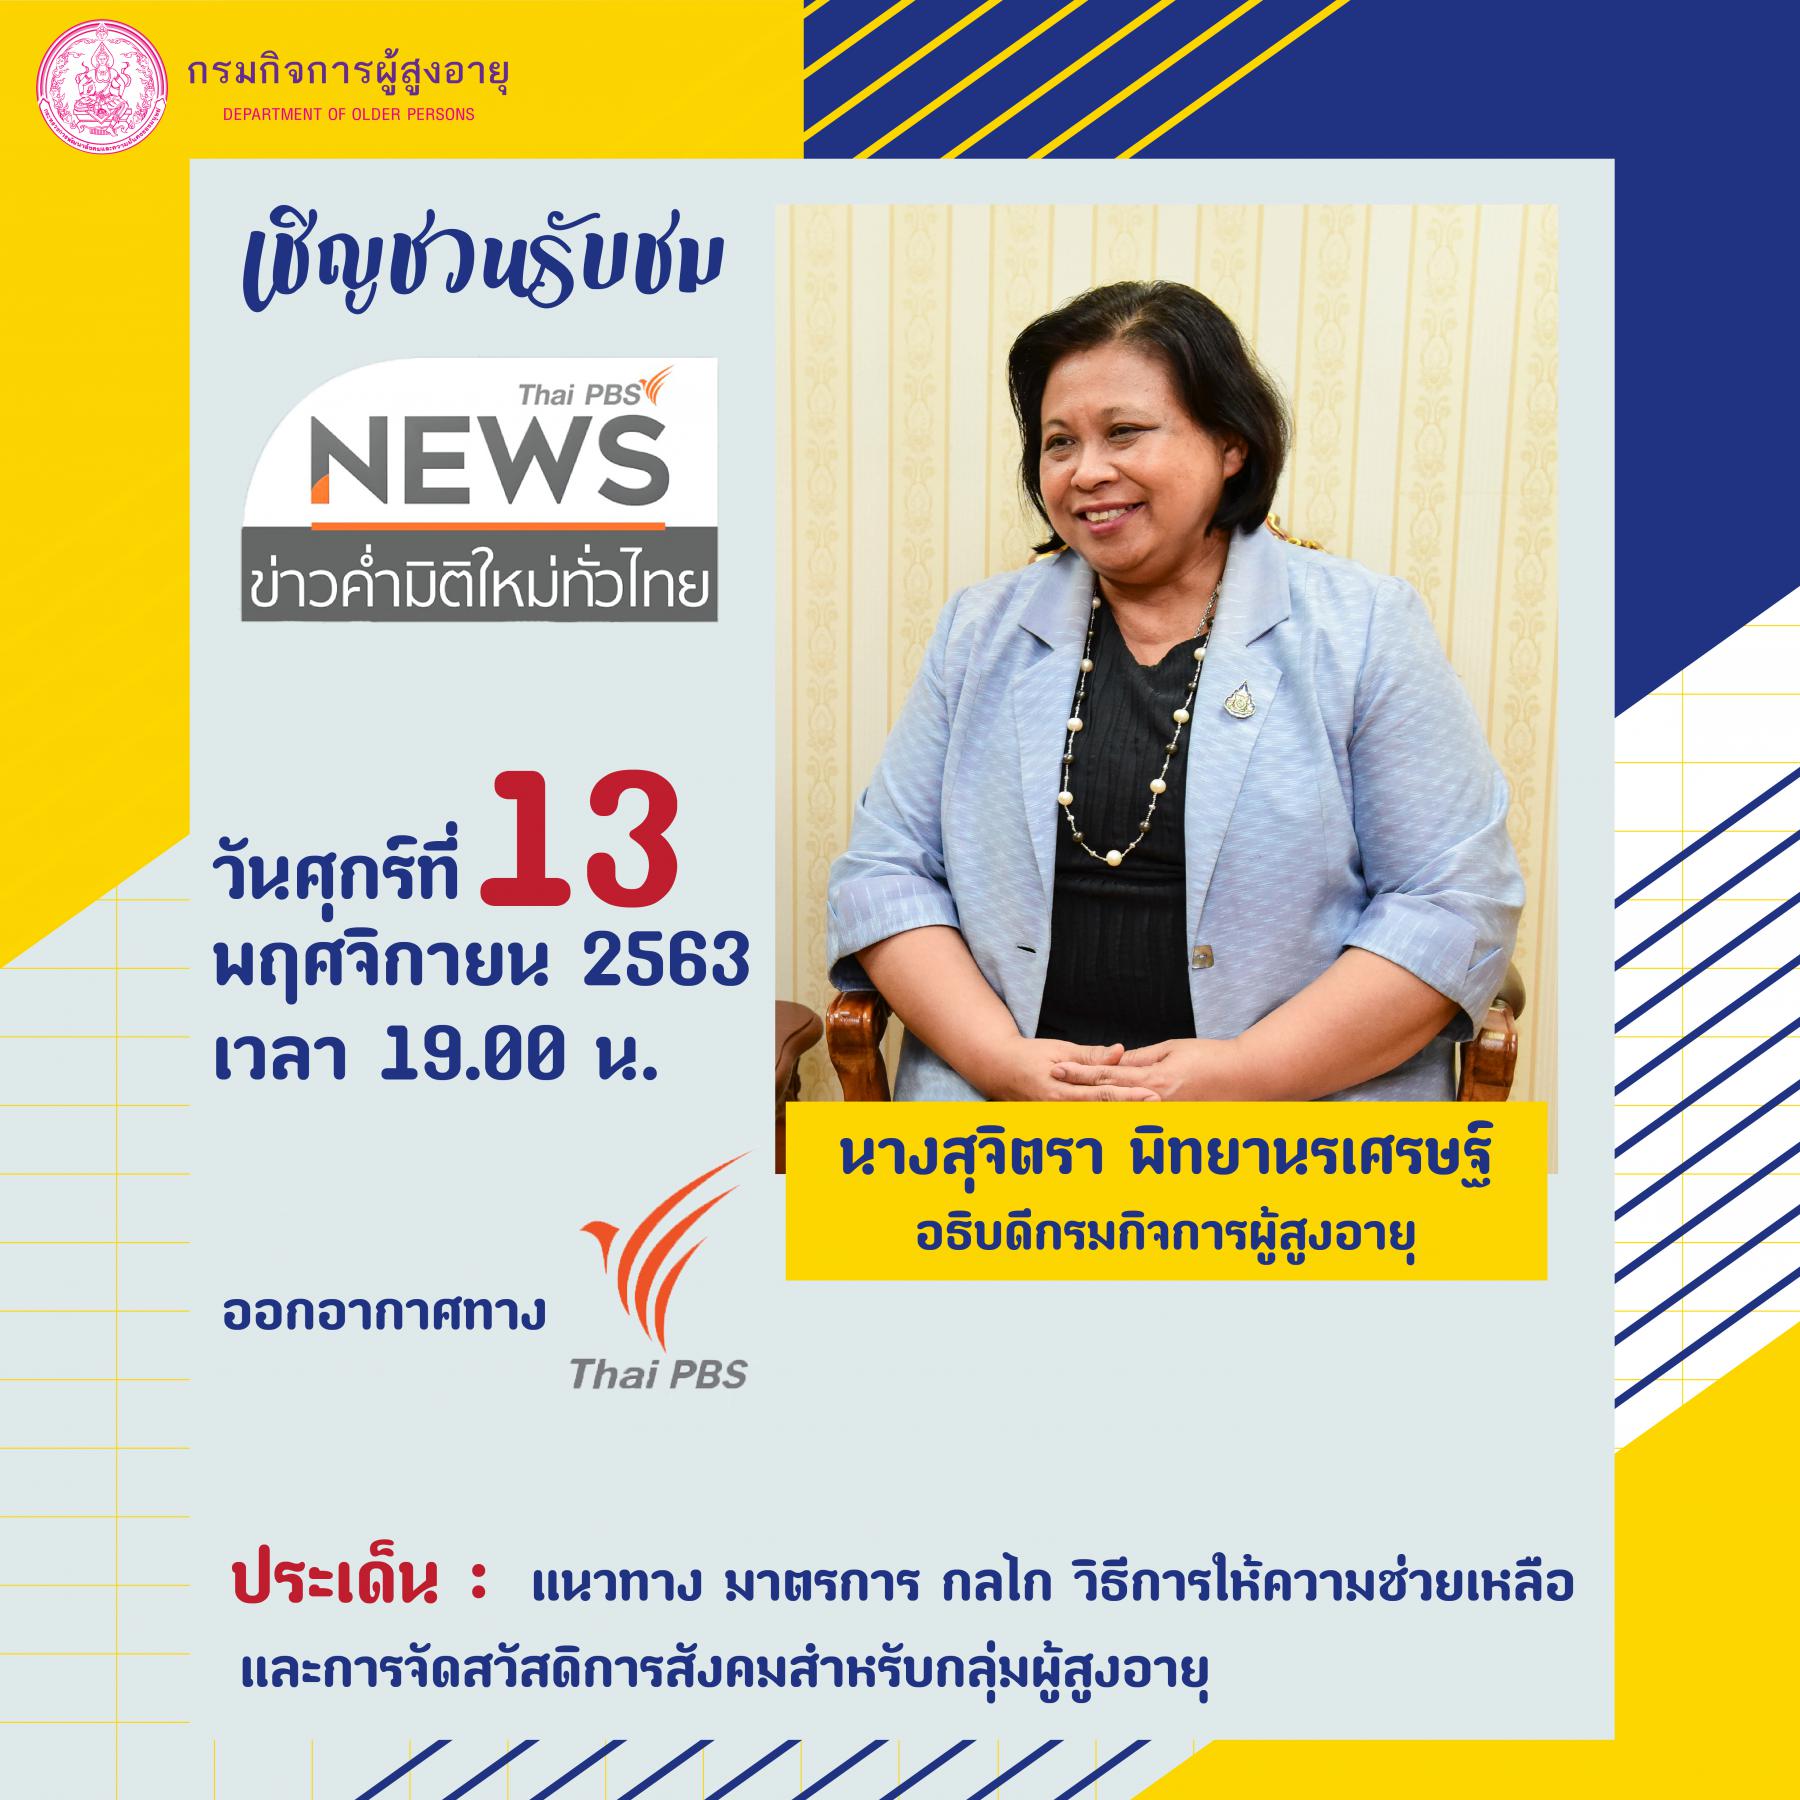 เชิญชวนรับชม นางสุจิตรา พิทยานรเศรษฐ์ อธิบดีกรมกิจการผู้สูงอายุ   สัมภาษณ์ ในรายการข่าวค่ำมิติใหม่ทั่วไทย ในวันศุกร์ที่ 13 พฤศจิกายน 2563 เวลา 19.00 น.